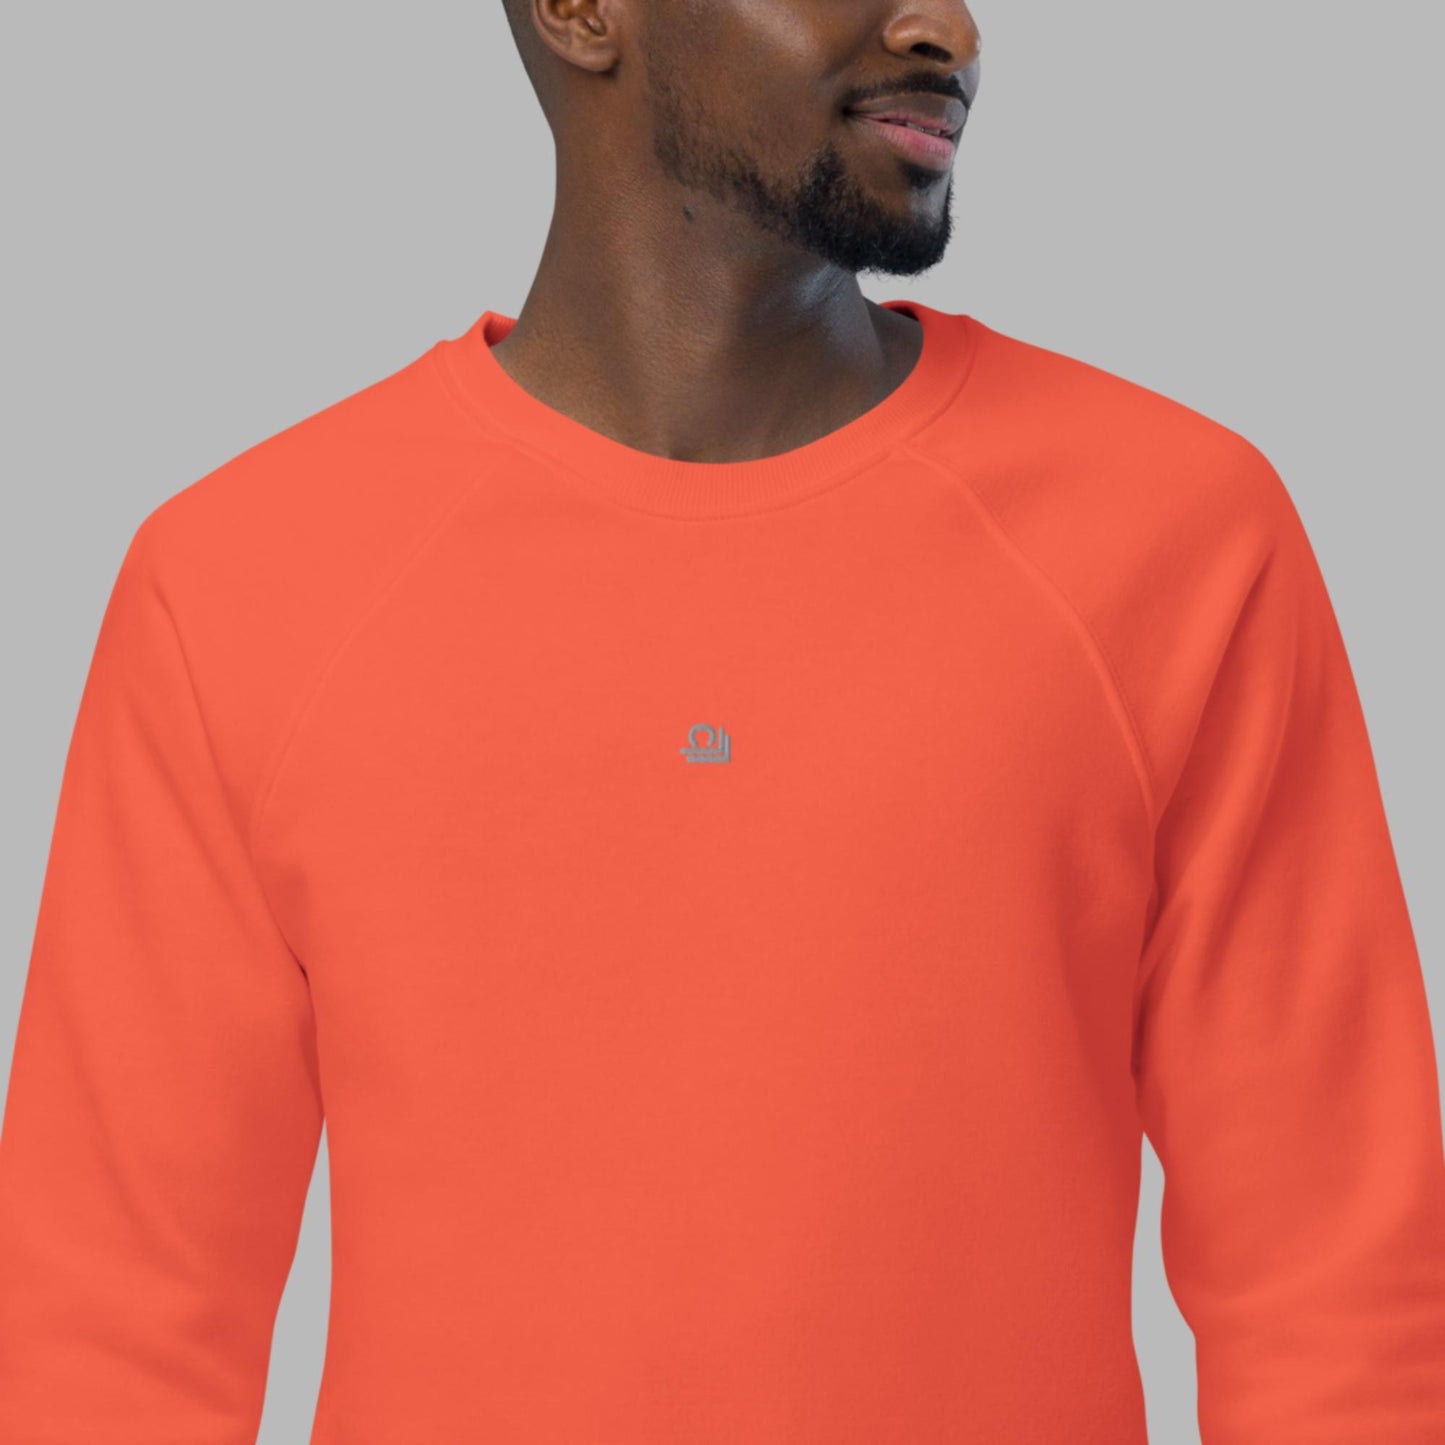 Unisex organic raglan sweatshirt - Clarilix